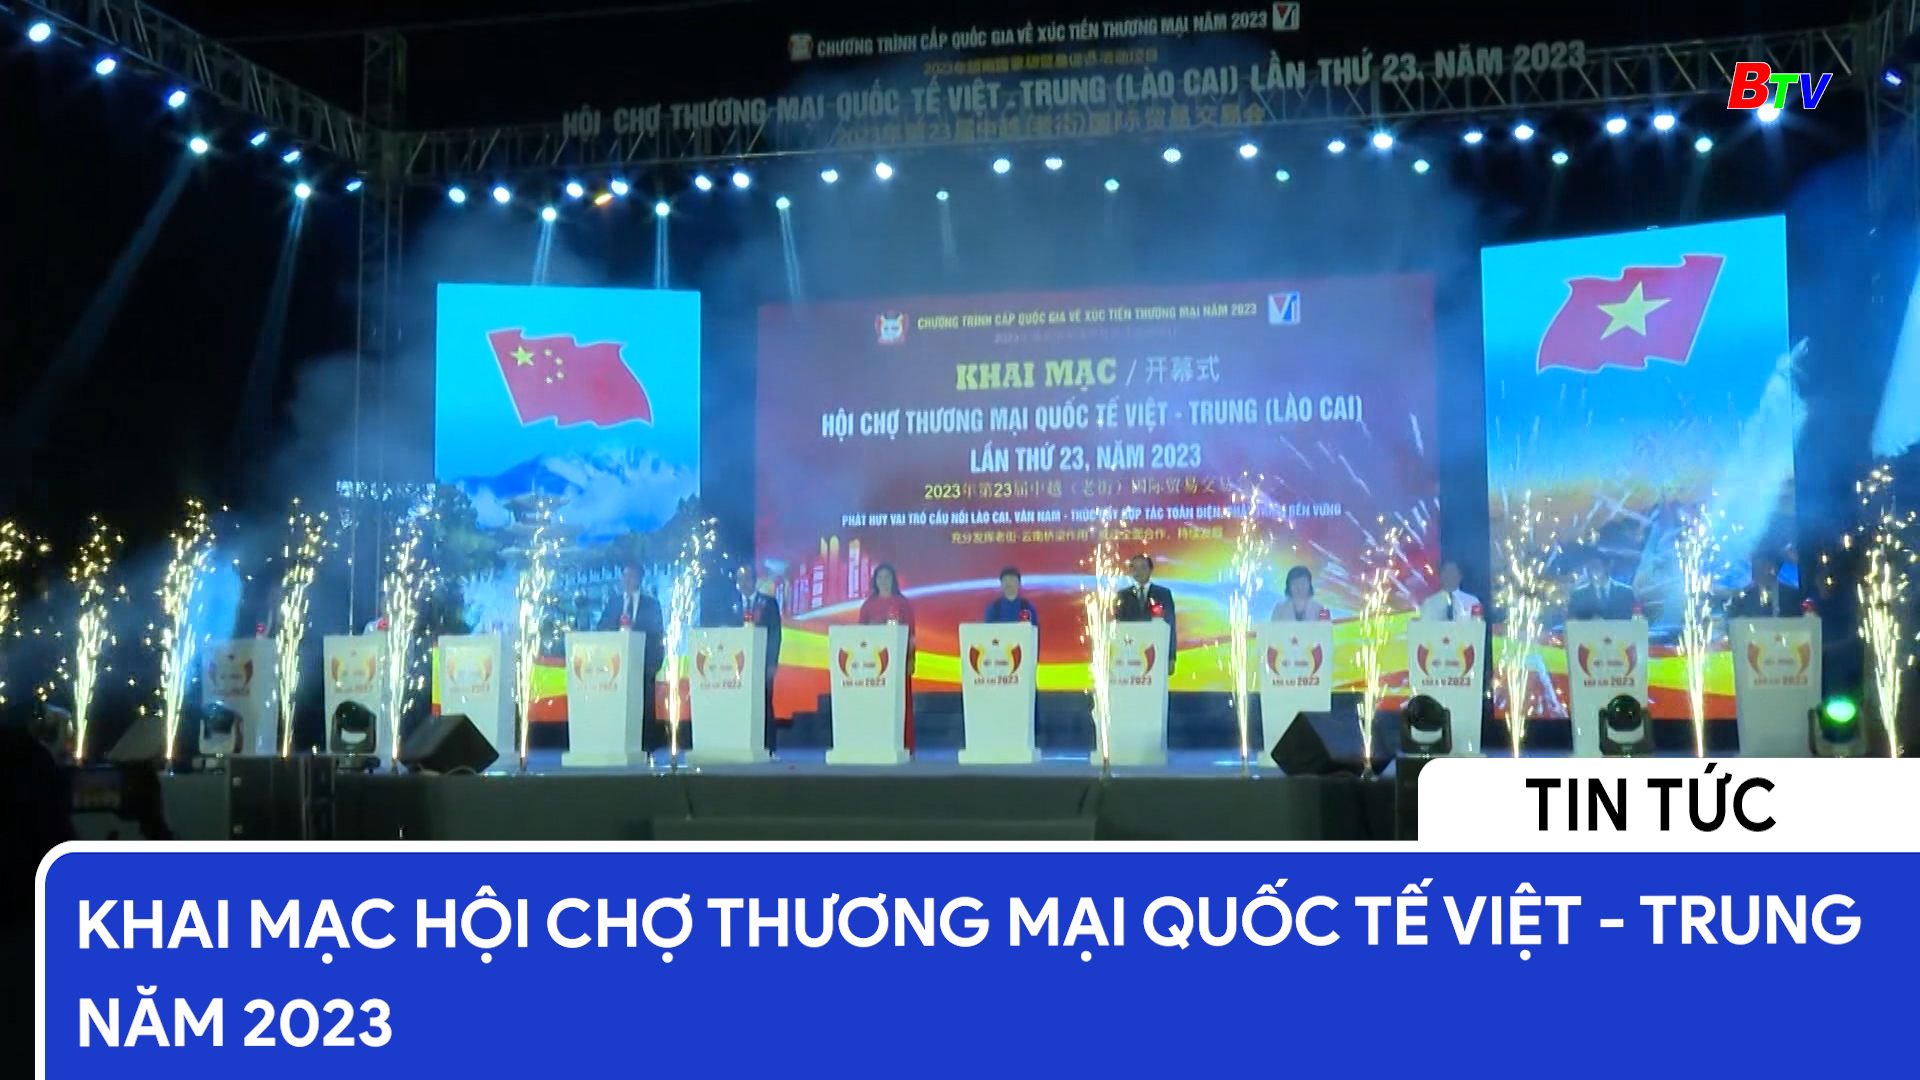 Khai mạc hội chợ thương mại quốc tế Việt - Trung năm 2023	